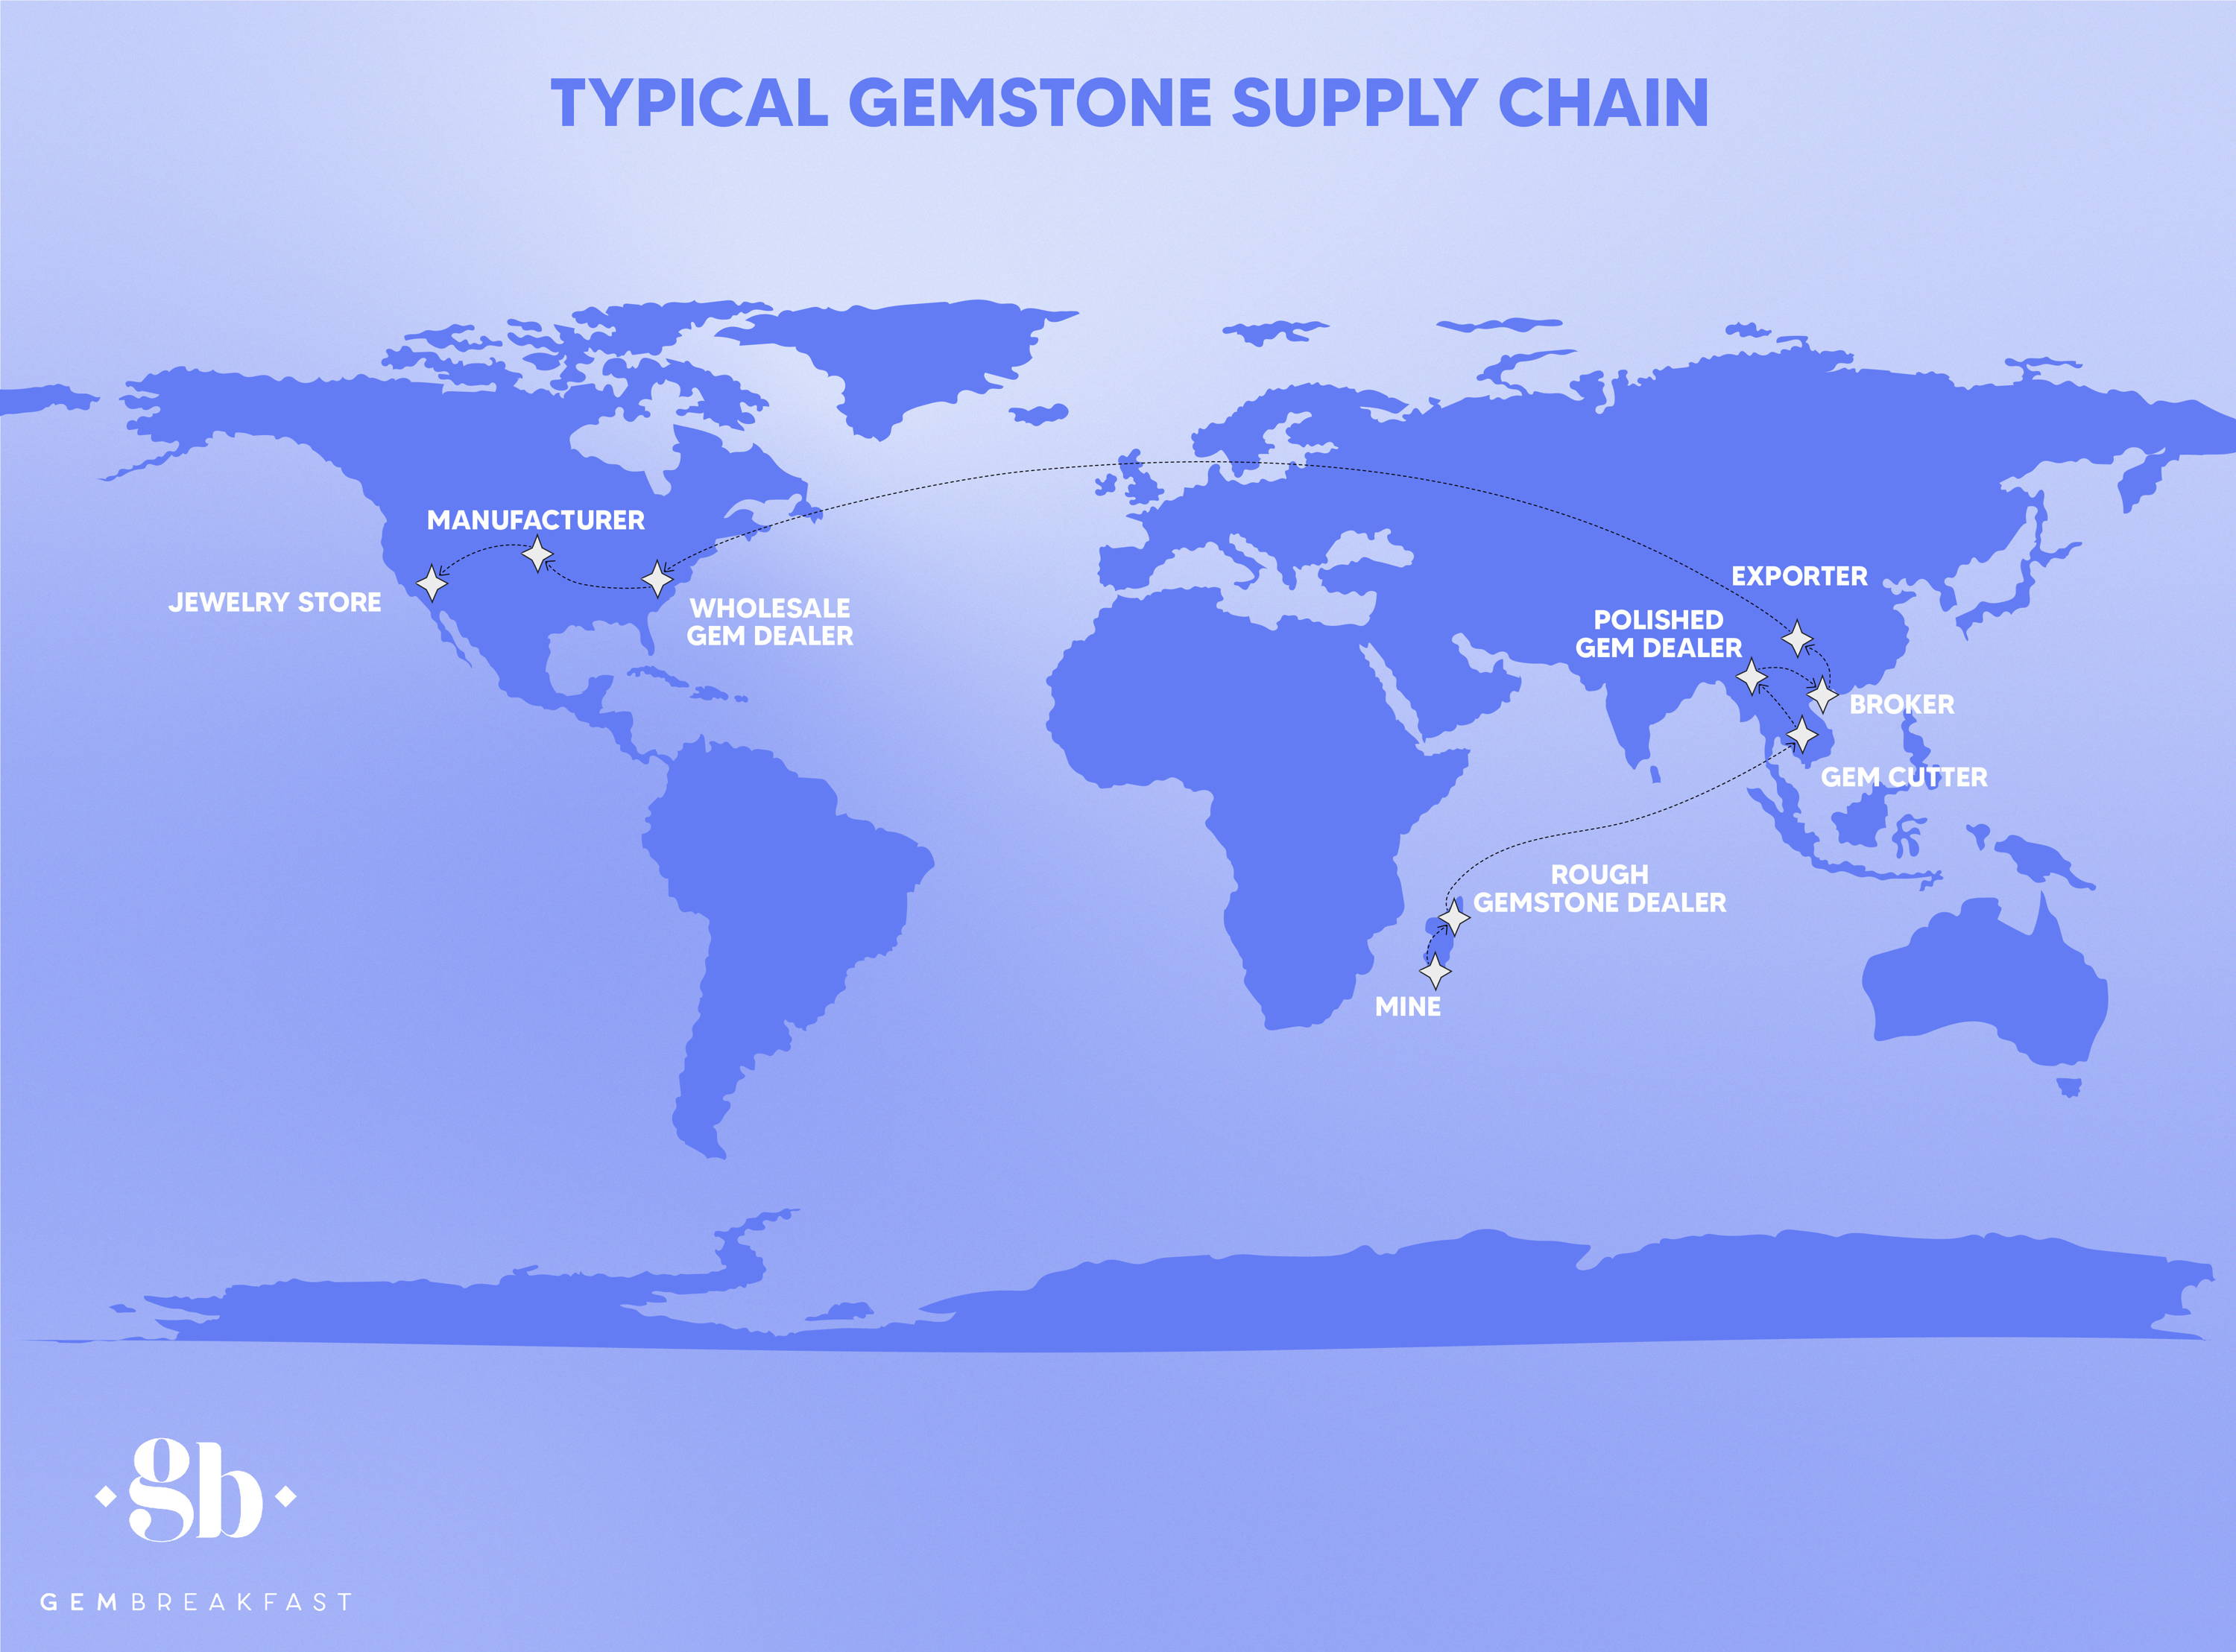 Typical Gemstone Supply Chain Map - GEM BREAKFASt 